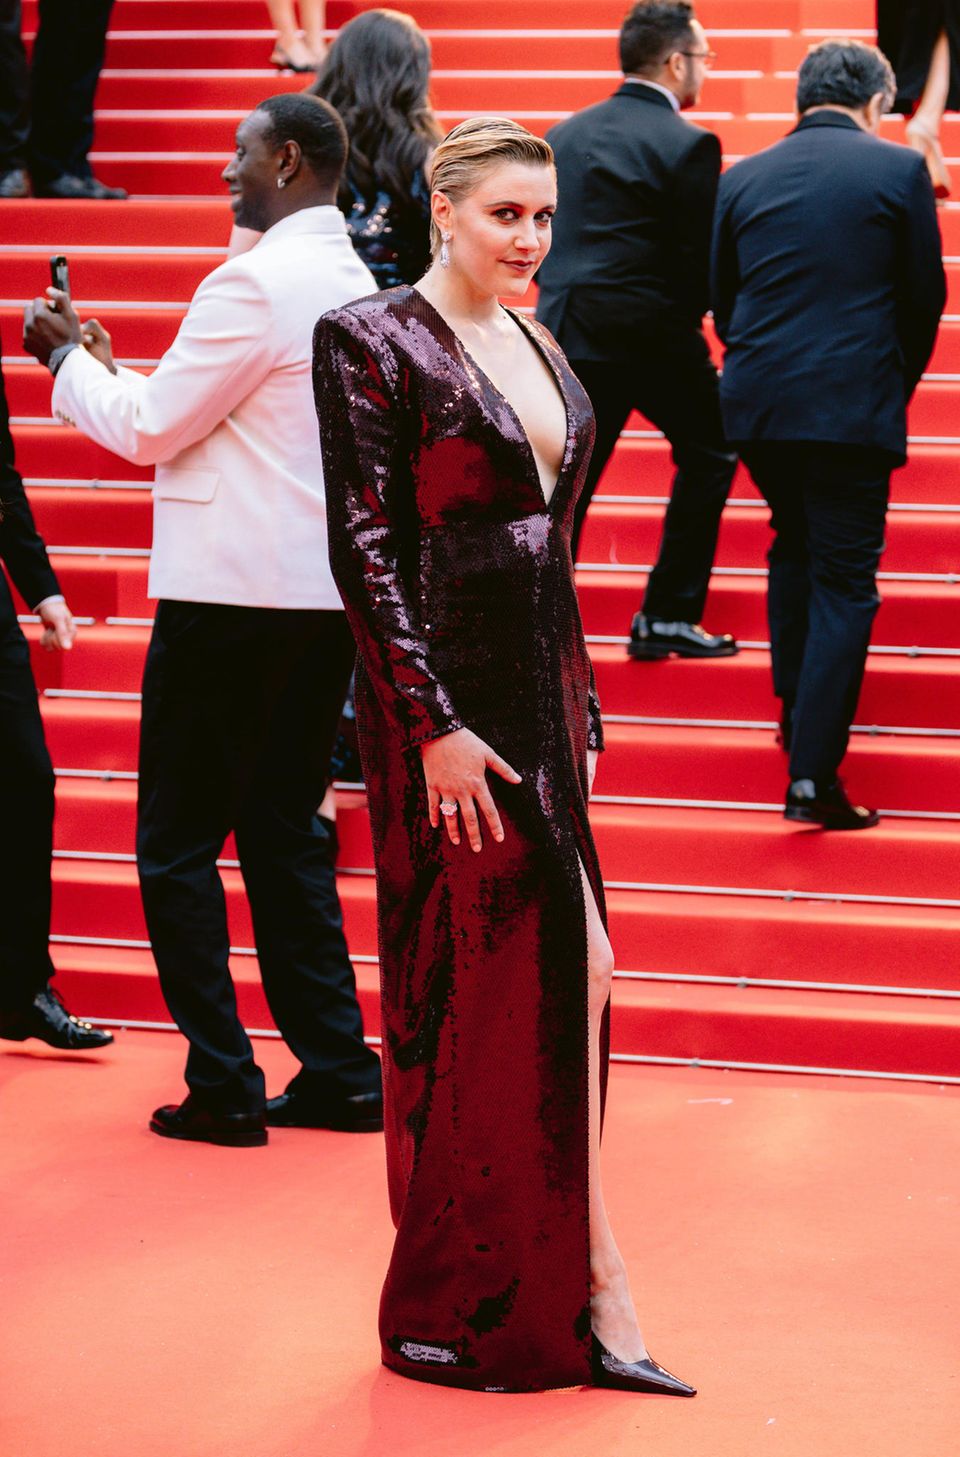 Regisseurin Greta Gerwig gehört in diesem Jahr zur Cannes-Jury. Ihr tiefweinroter Pailletten-Look für die Eröffnungszeremonie fällt dementsprechend glamourös aus. Das Kleid wurde für sie von Saint Laurent angefertigt.